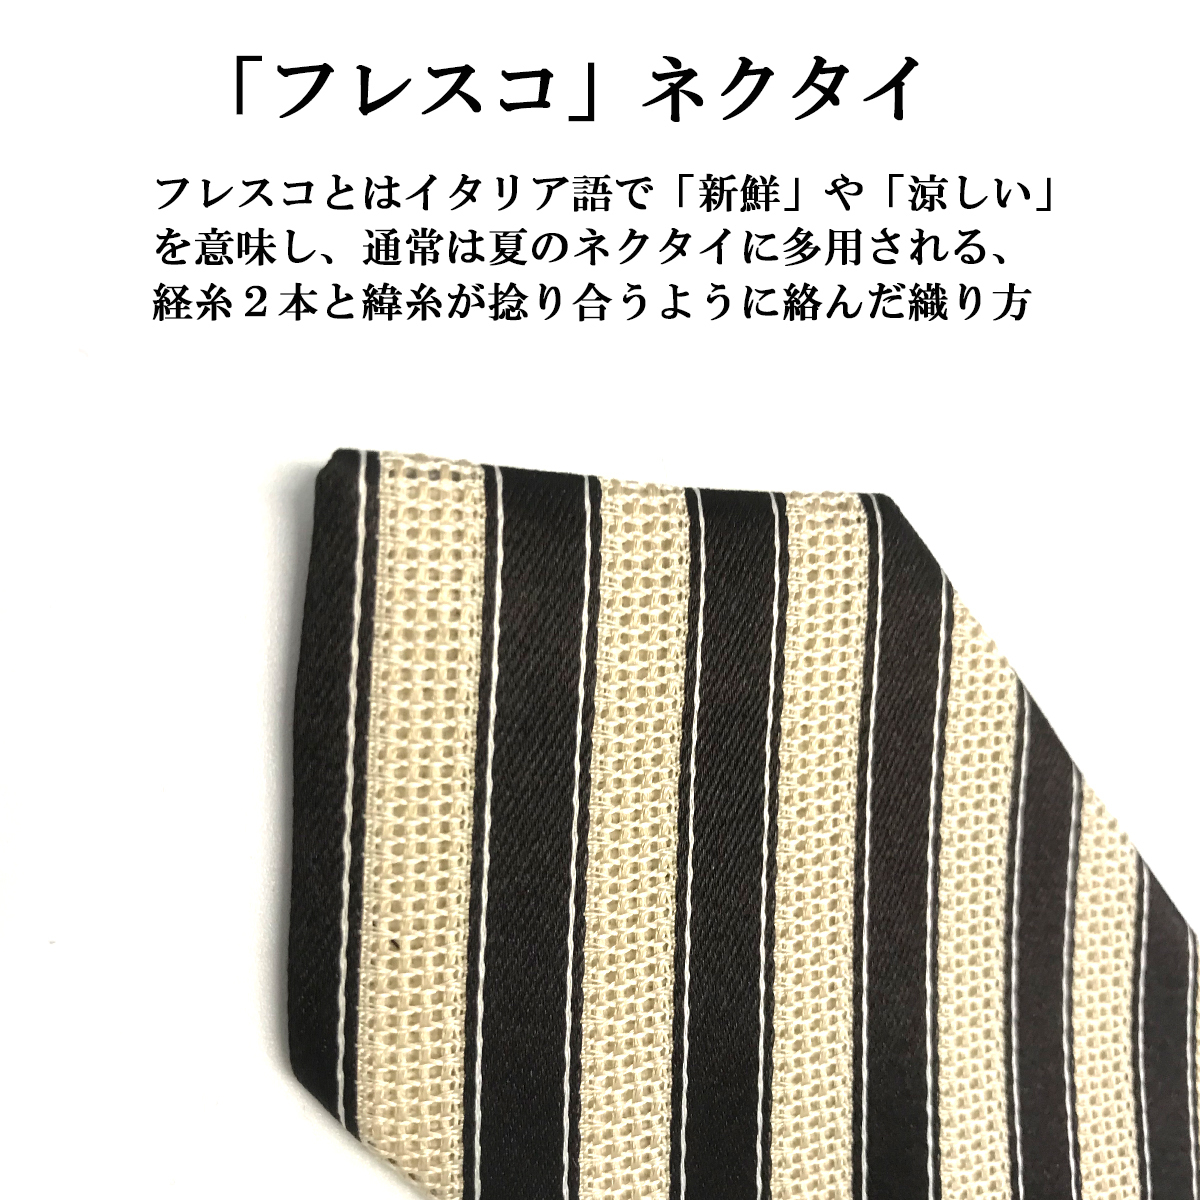  сделано в Японии галстук узкий галстук шелк модный весна f отсутствует ko... вечеринка почтовая доставка бесплатная доставка 